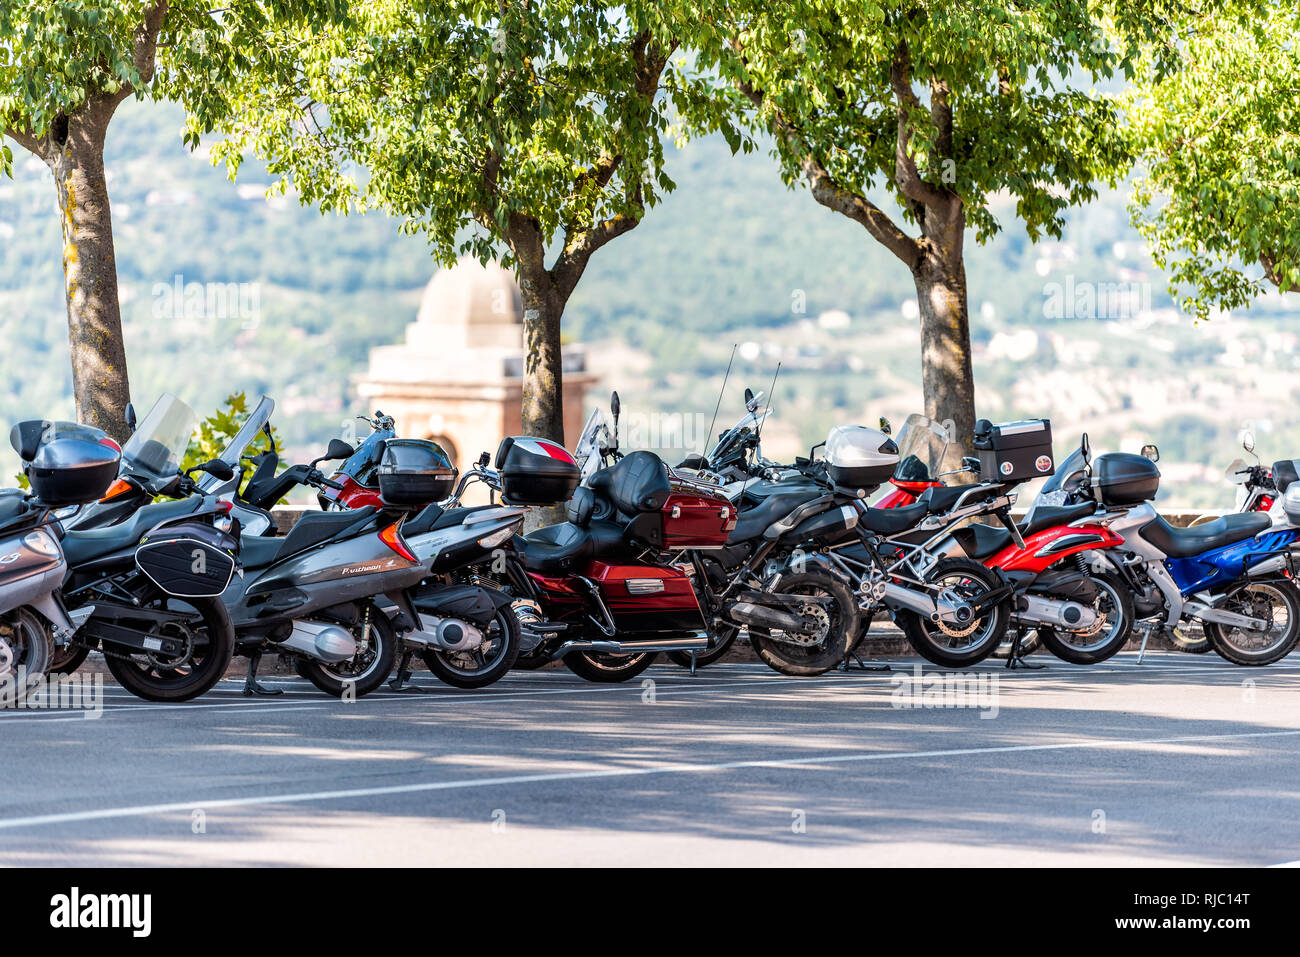 Perugia, Italien - 29 August 2018: Viele Reihe von scooter Motorrad Moped in Stadt Straße Parkplatz geparkt mit niemand im Sommer Tag Stockfoto